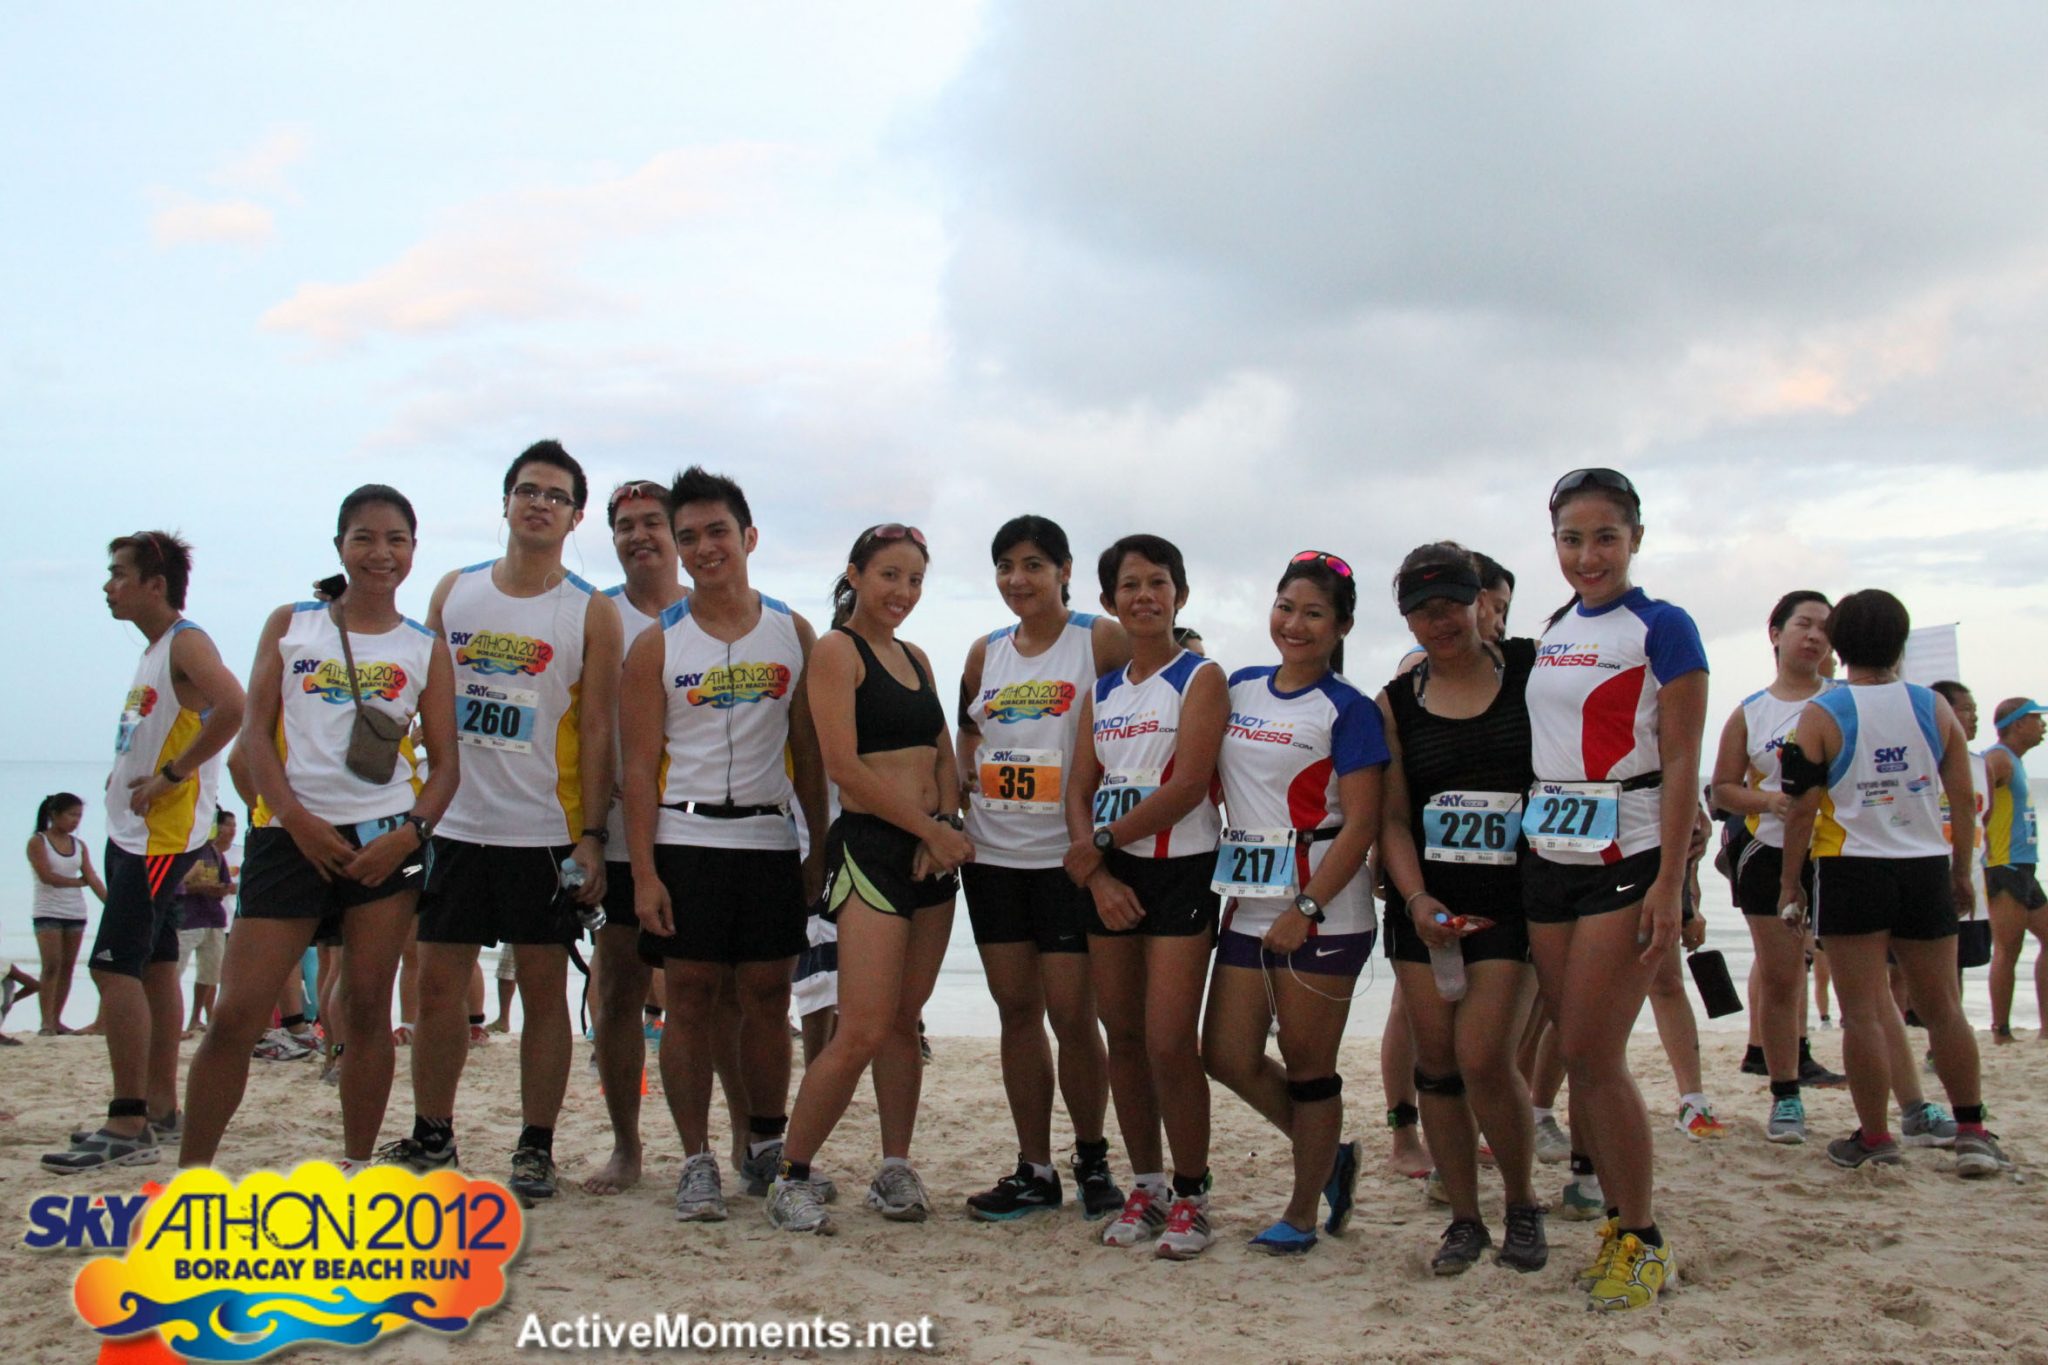 Skyathon 2012: Manila Runners